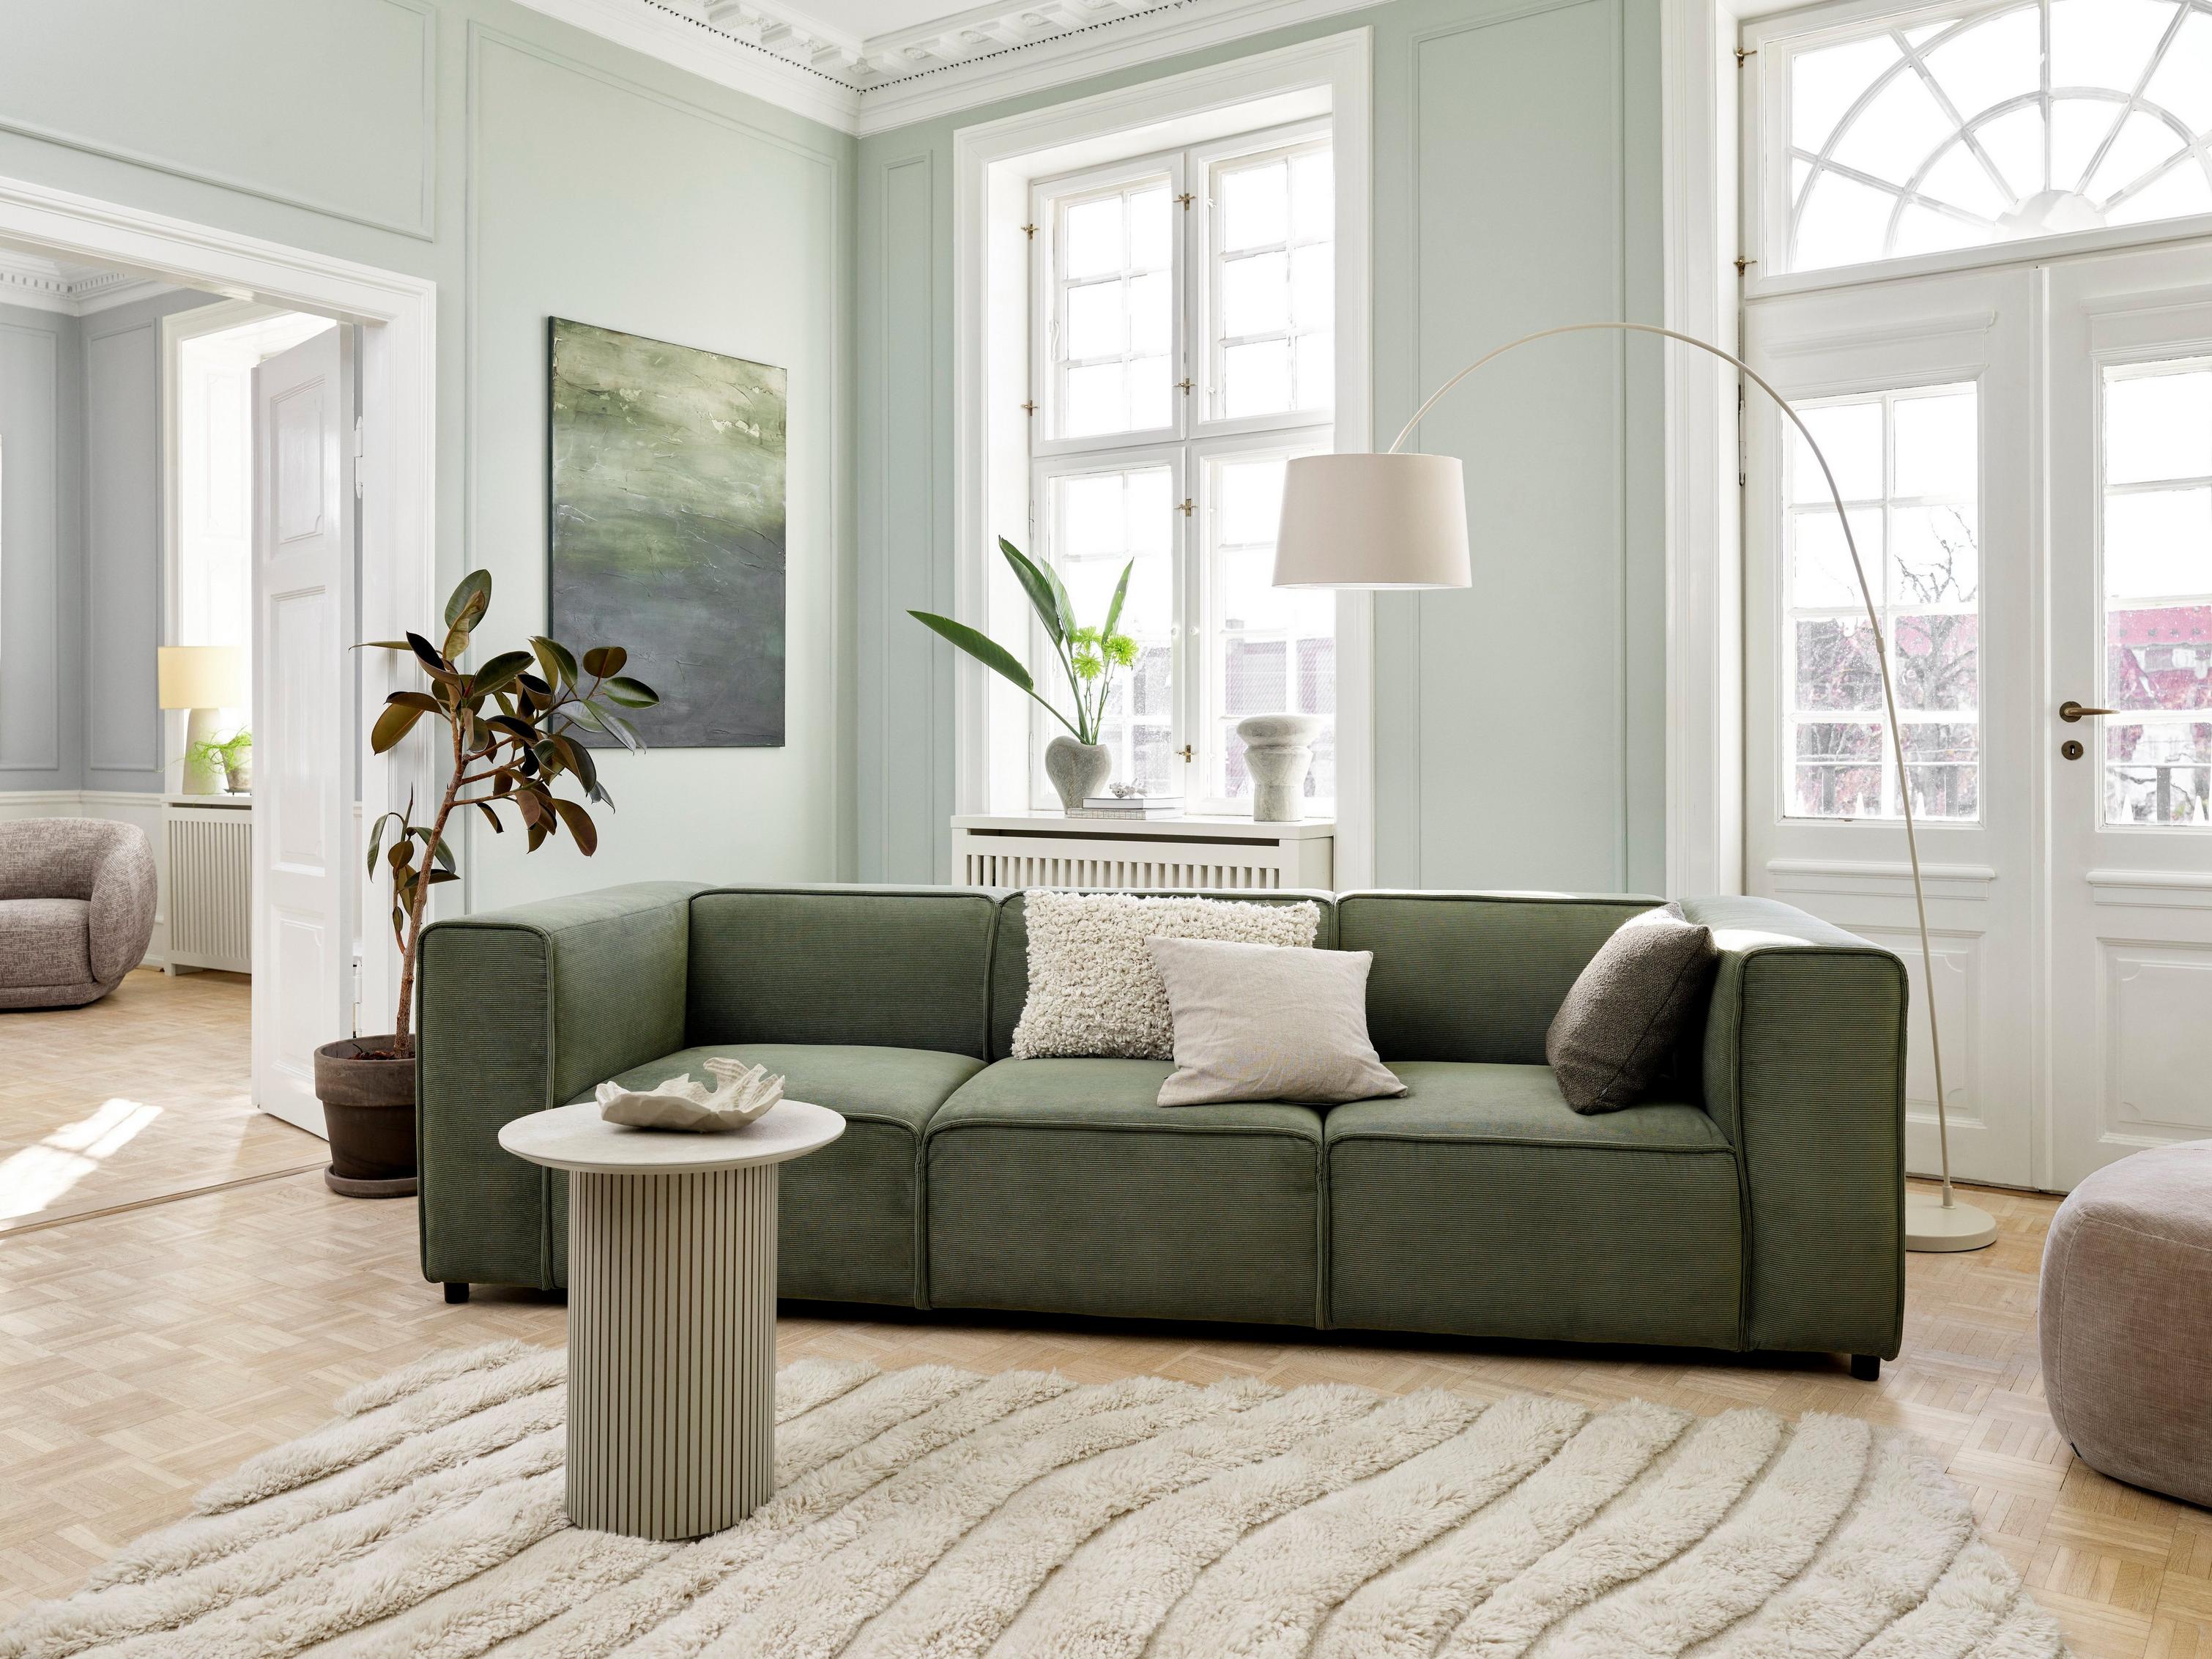 Un salon d’inspiration Japandi avec le canapé Carmo en tissu Skagen vert.